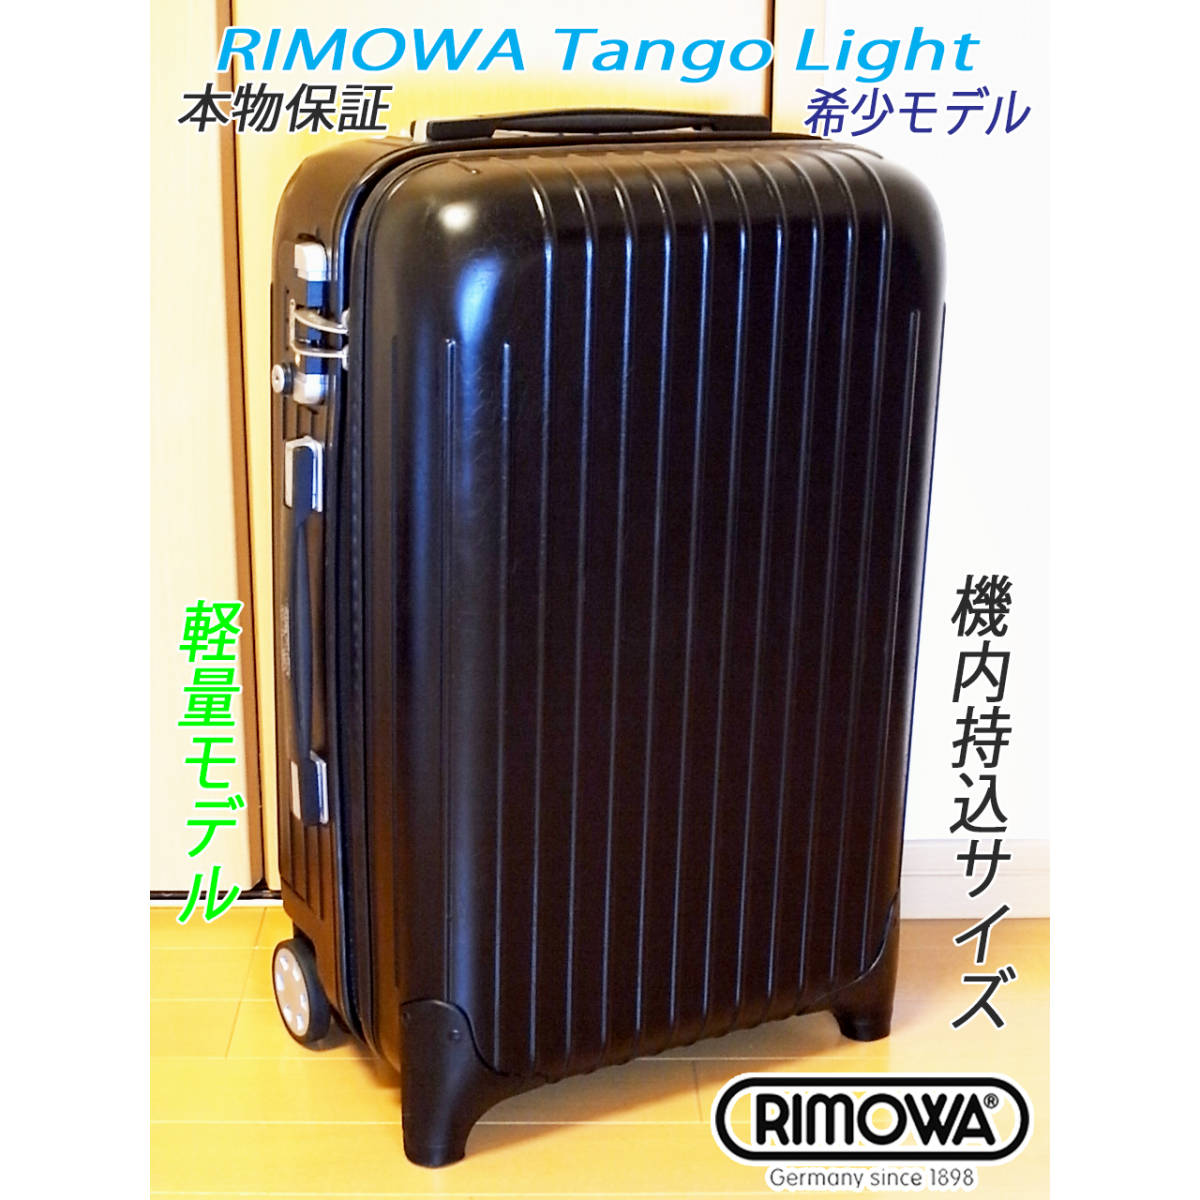 ◇本物 RIMOWA Tango Light/リモワライト 33L 軽量 ポリカーボ製 人気 ...